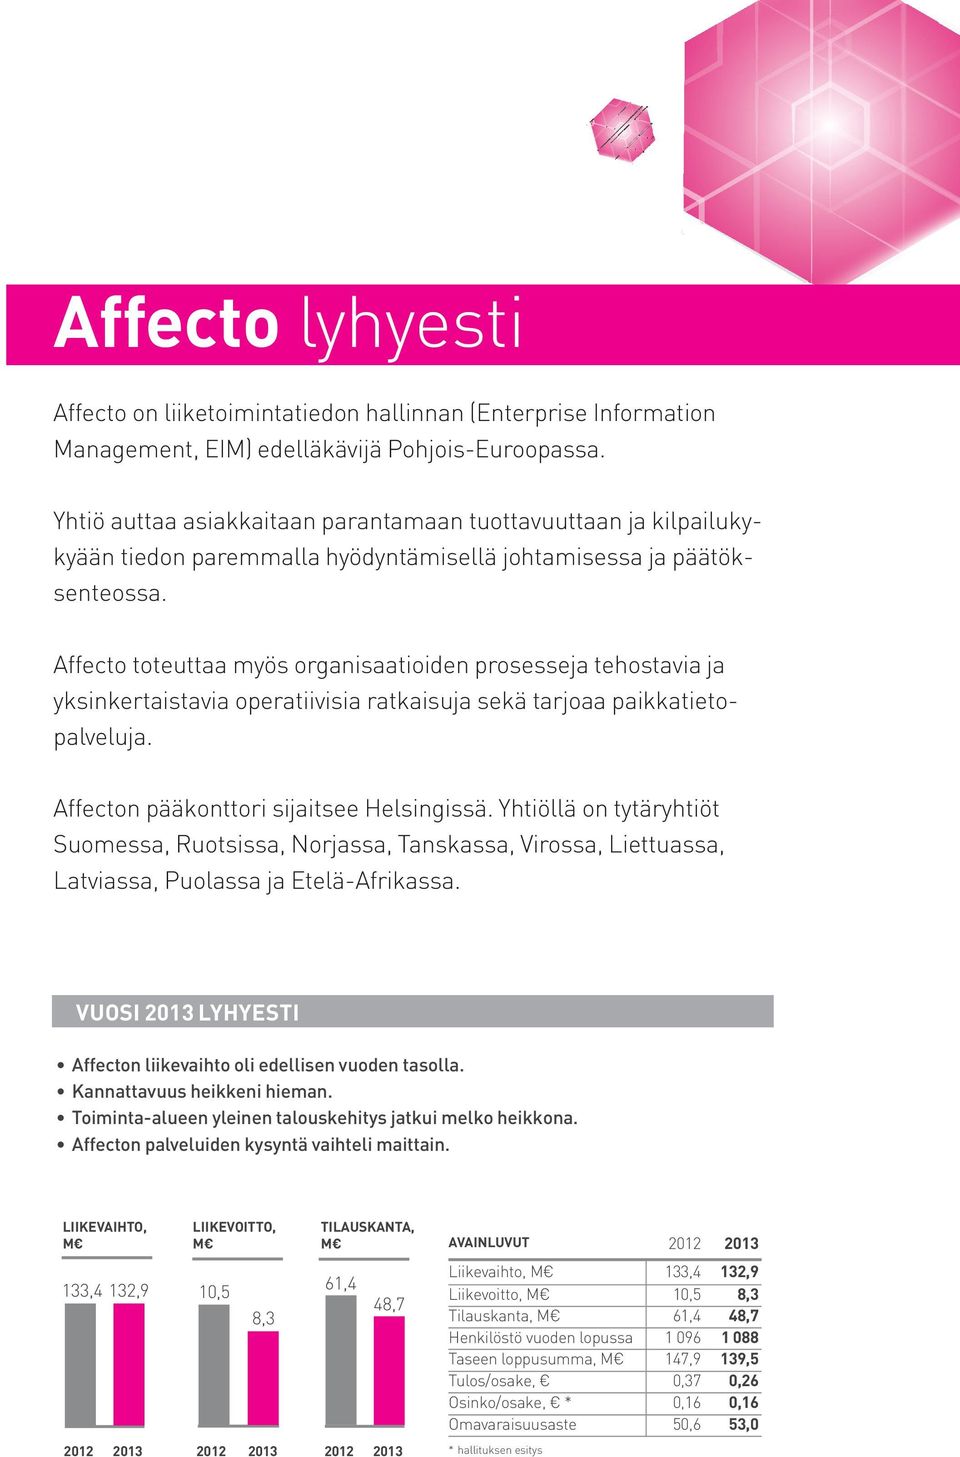 Affecto toteuttaa myös organisaatioiden prosesseja tehostavia ja yksinkertaistavia operatiivisia ratkaisuja sekä tarjoaa paikkatietopalveluja. Affecton pääkonttori sijaitsee Helsingissä.